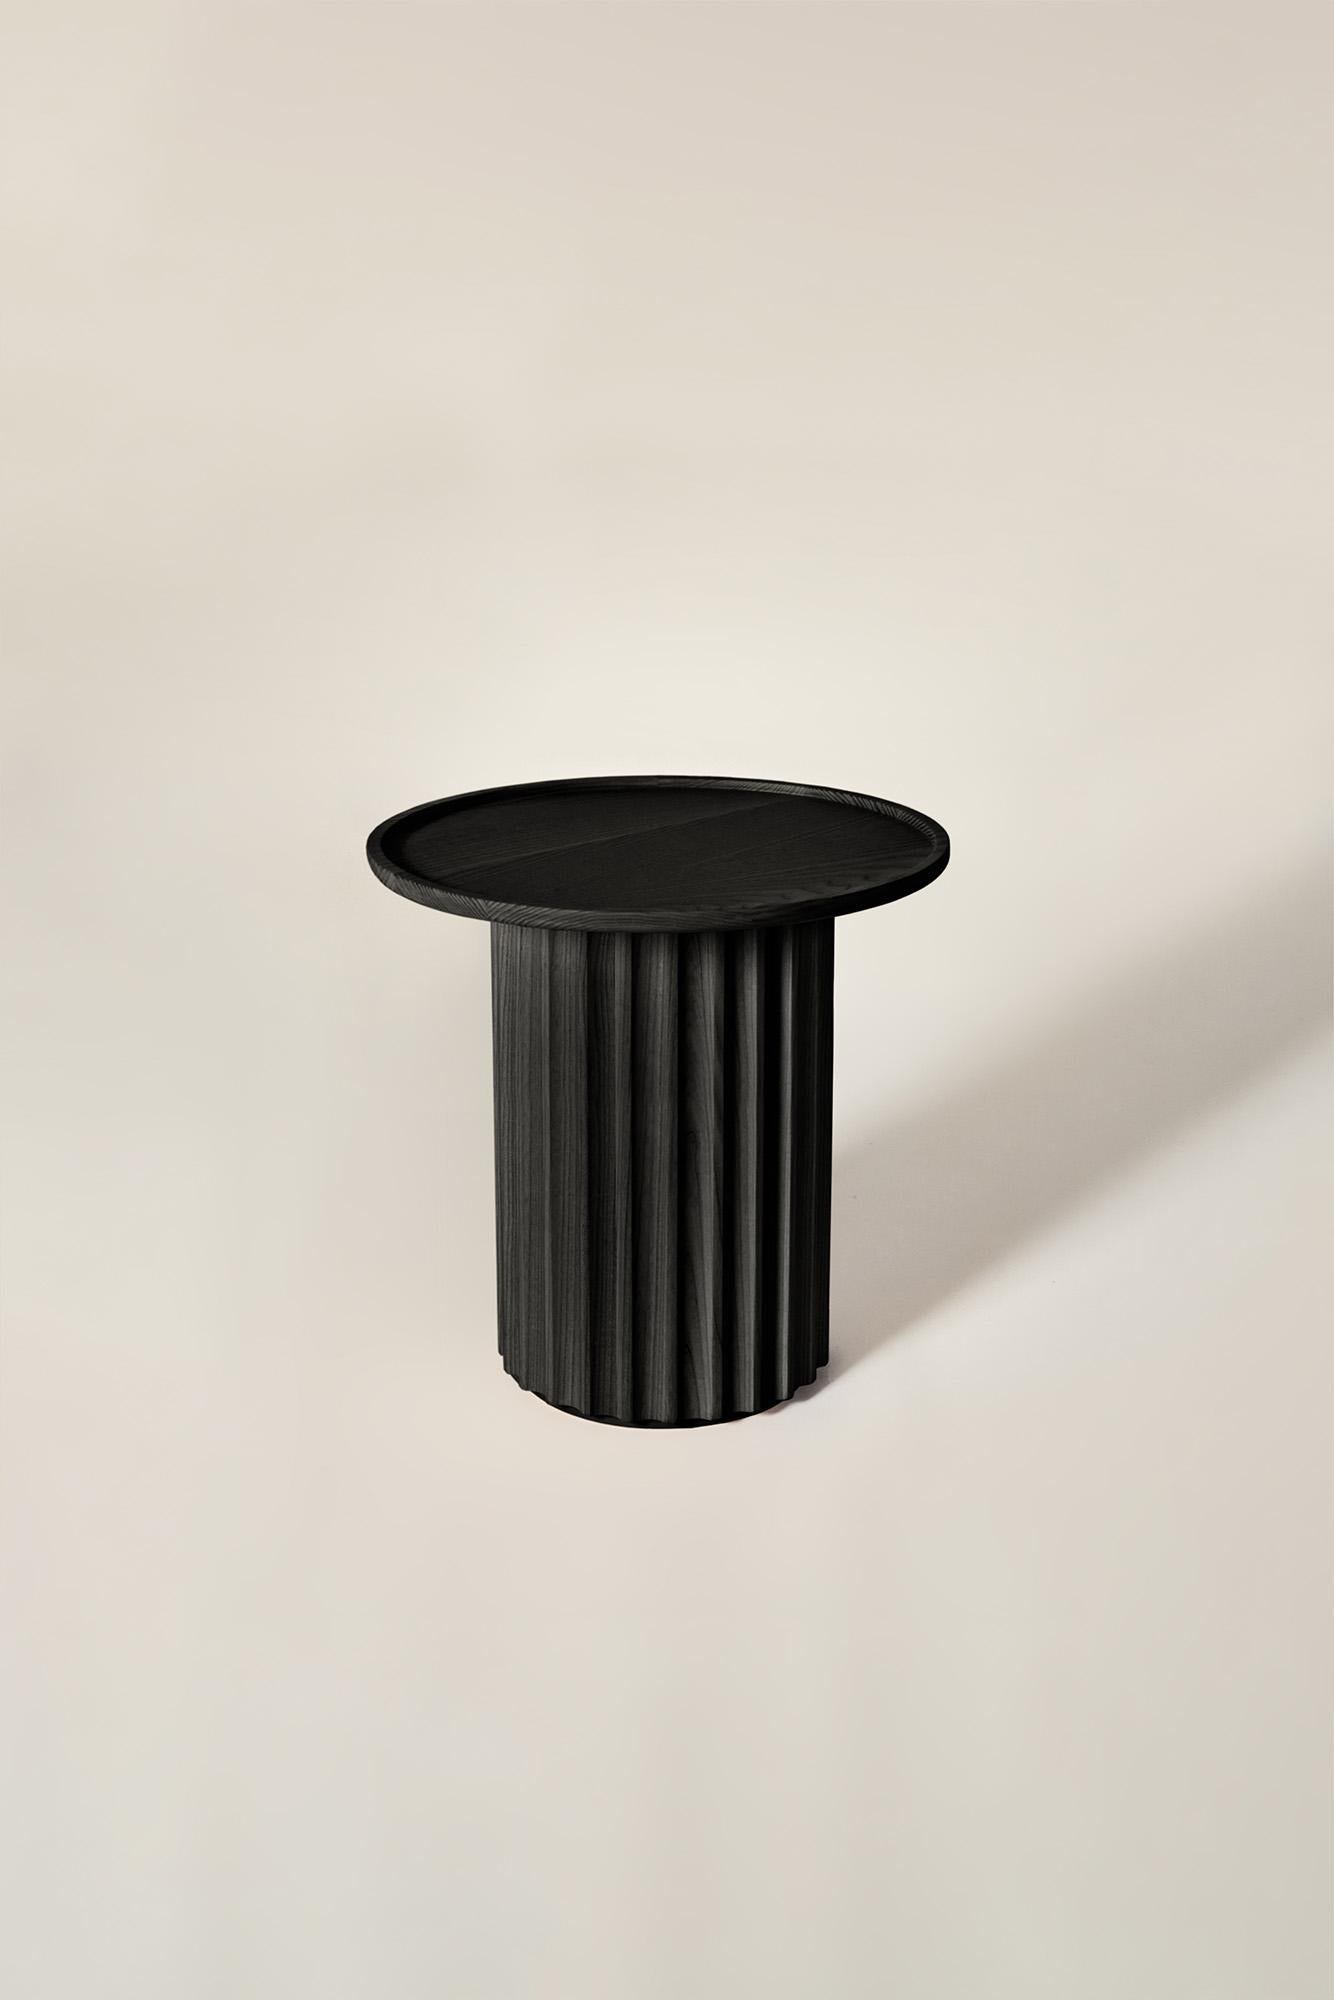 Capitello Solid Wood Coffee Table, Ash in Black Finish, Contemporary In New Condition For Sale In Cadeglioppi de Oppeano, VR